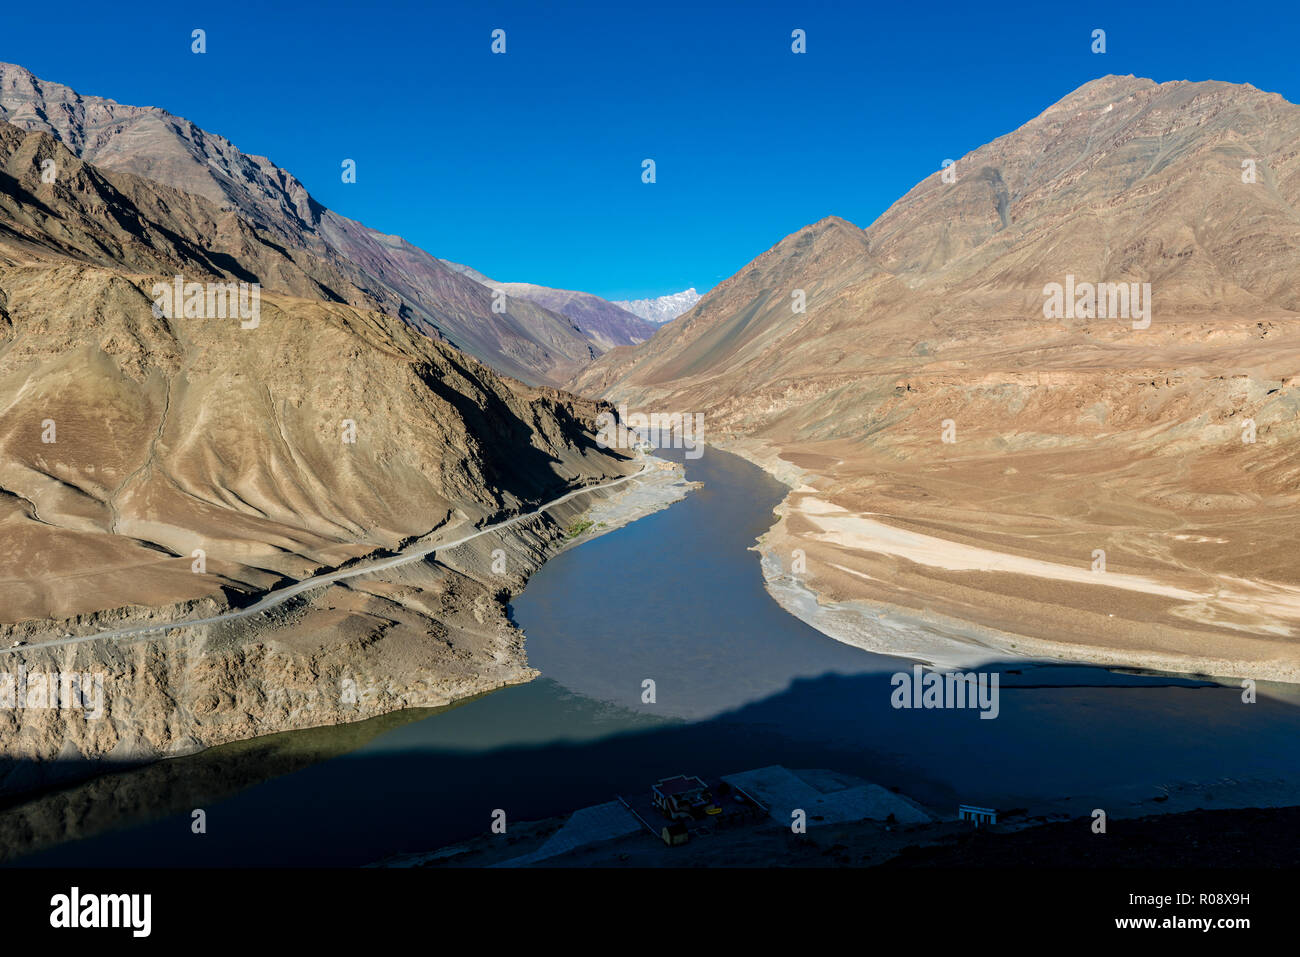 El Sangam, la confluencia de los ríos Indo y Bajo Zanskar, une ambos ríos para convertirse en un poderoso torrente. Foto de stock